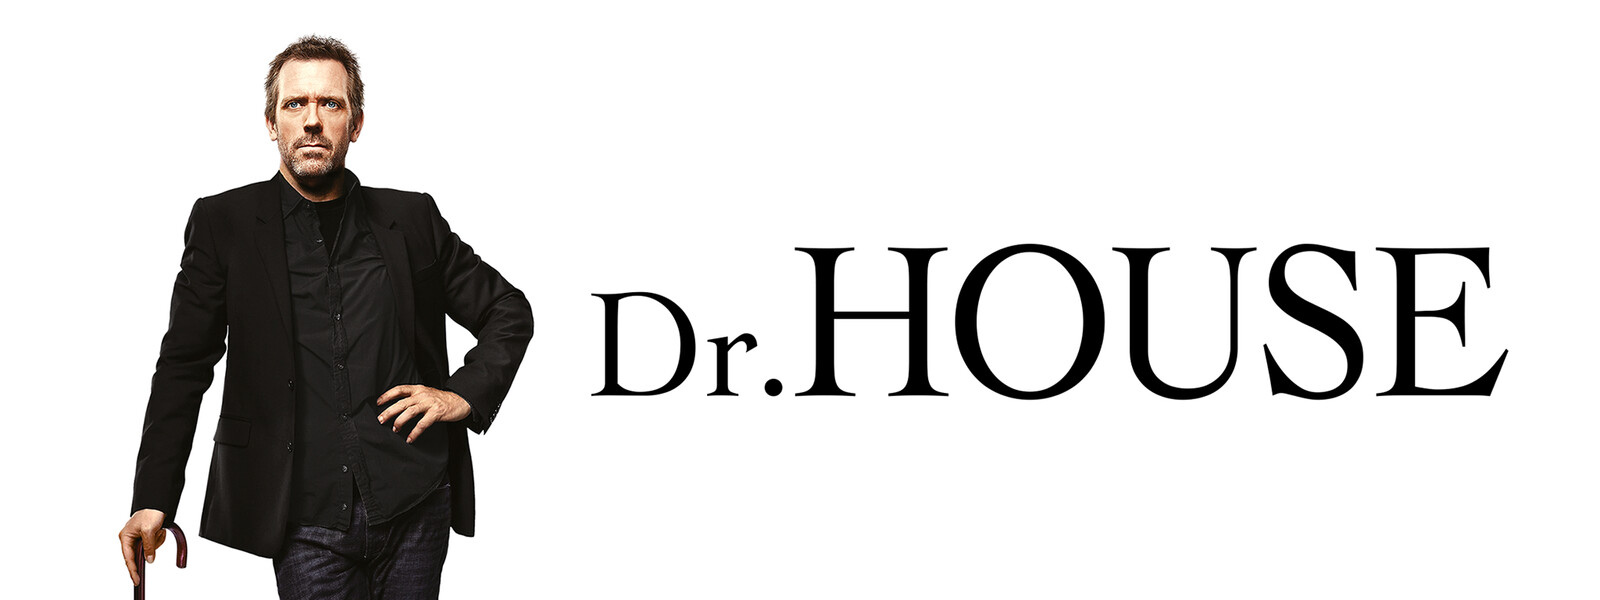 Dr. HOUSE／ドクター・ハウス シーズン5の動画 - Dr. HOUSE／ドクター・ハウス シーズン4